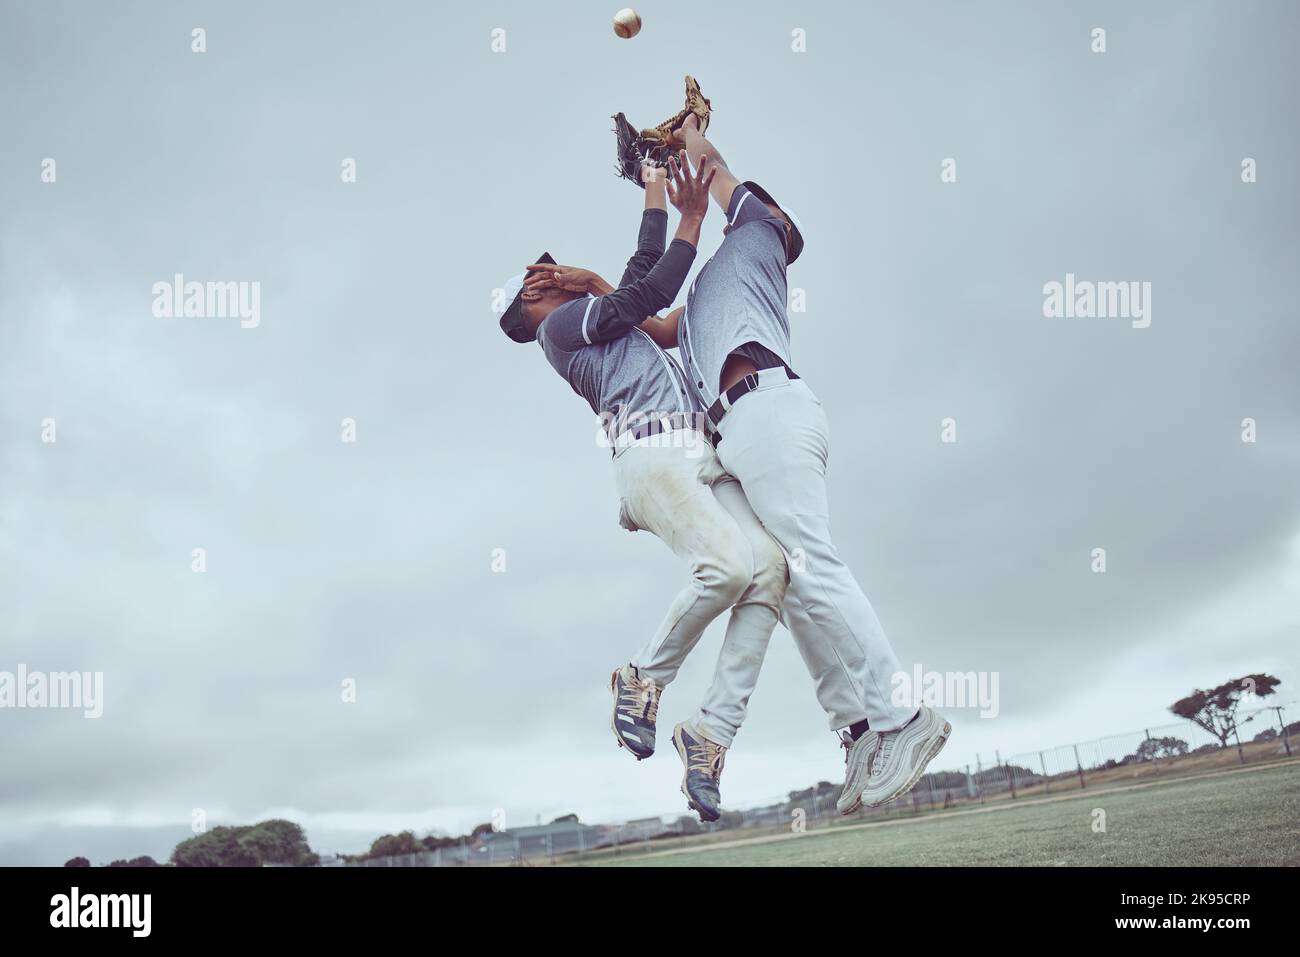 Sport, Action und ein Mann fangen Baseballspiele, springen in die Luft mit Ball im Baseballhandschuh. Energie, Sport und Fang, Baseballspieler auf dem Feld oder dem Spielfeld Stockfoto